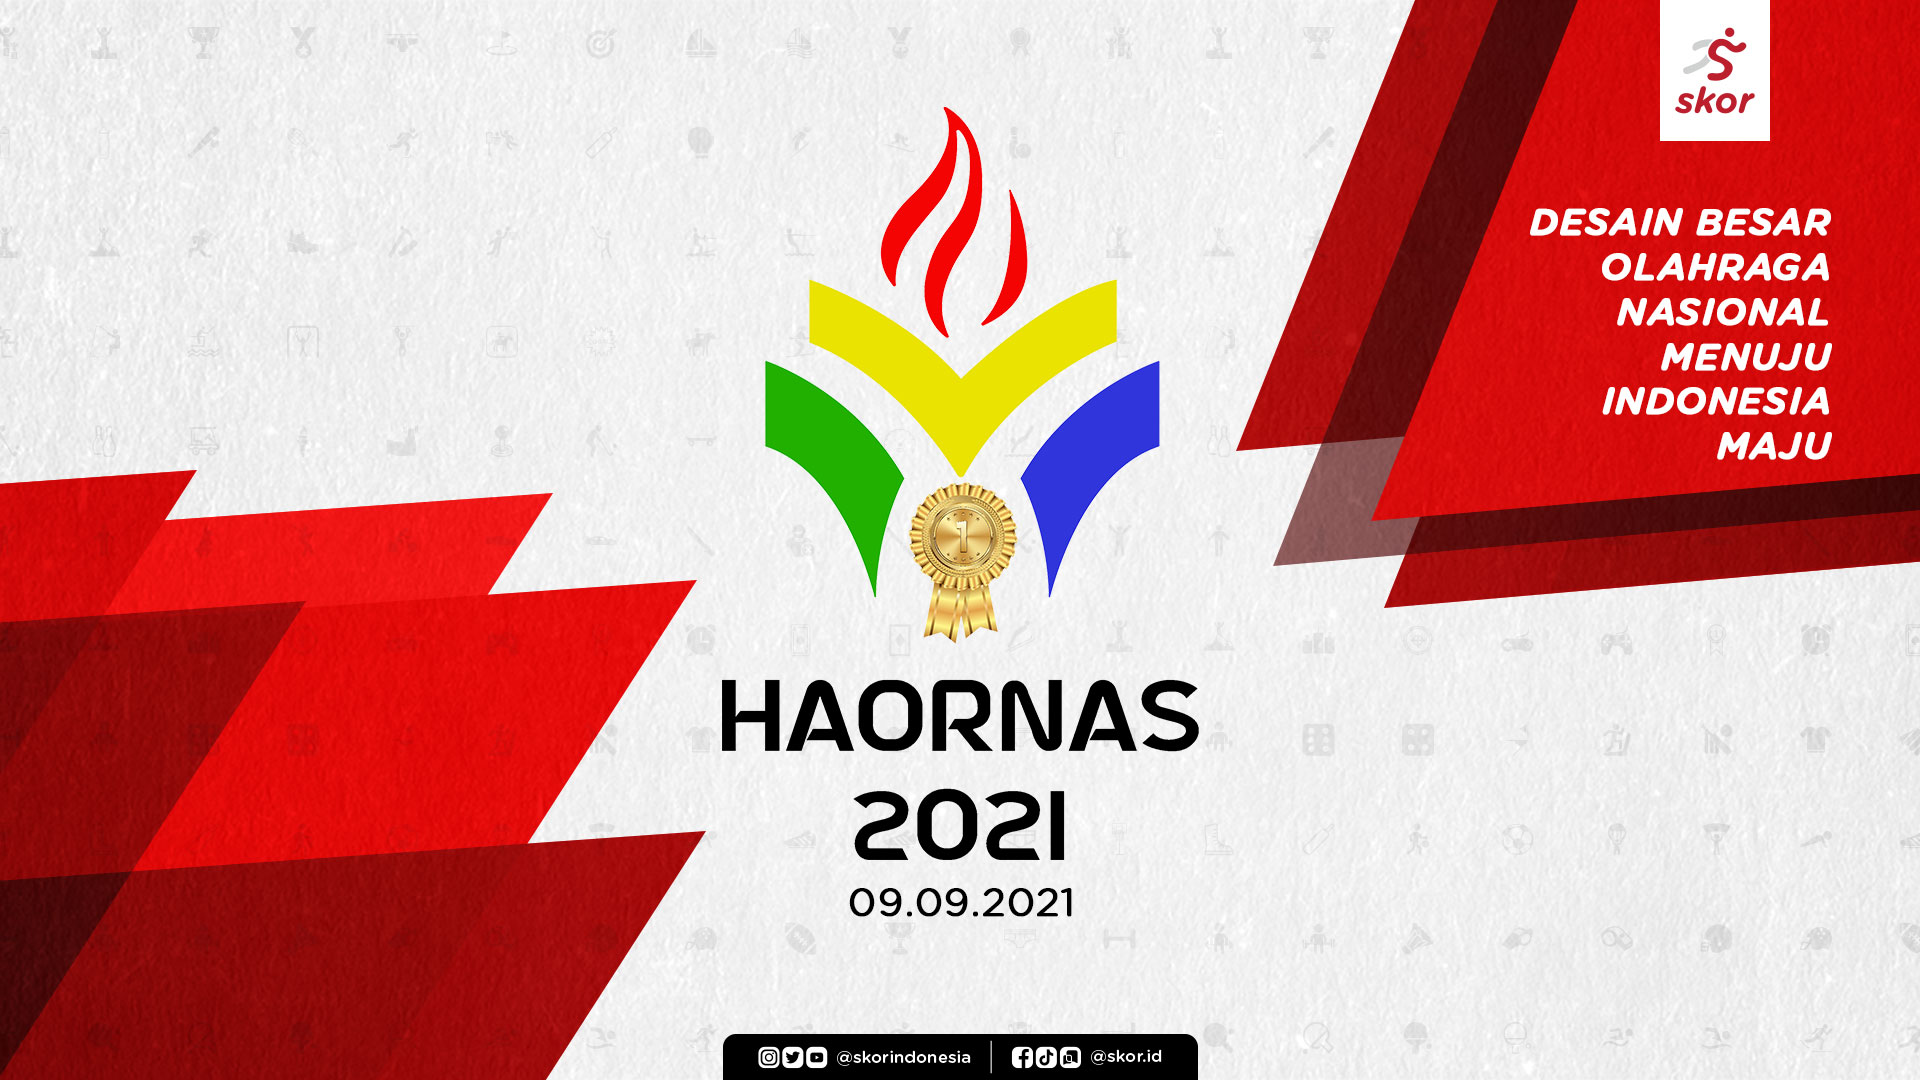 Spesial Haornas 2021: Sejarah Pentingnya Tanggal 9 September sebagai Hari Olahraga Nasional